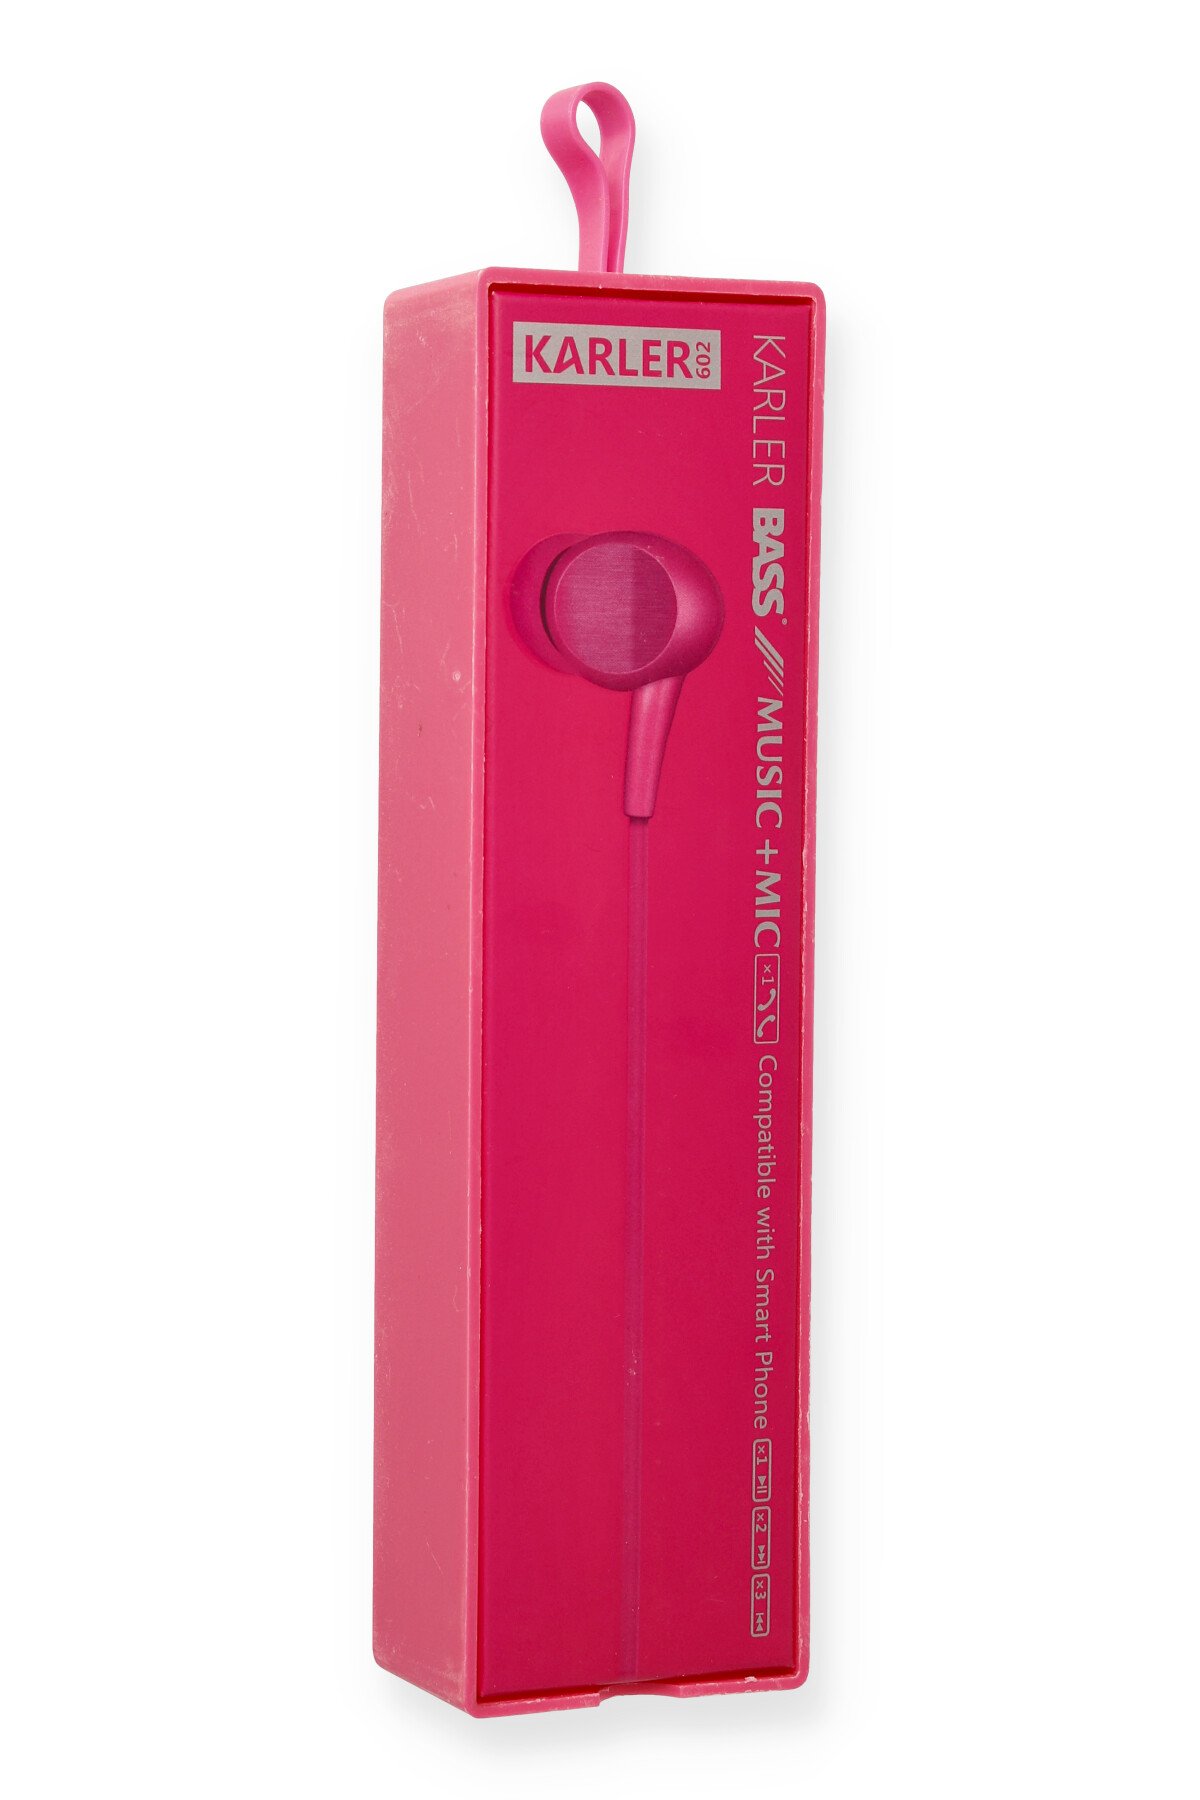 Karler Bass KR-207 Mıknatıslı Kablolu Kulaklık - Kırmızı